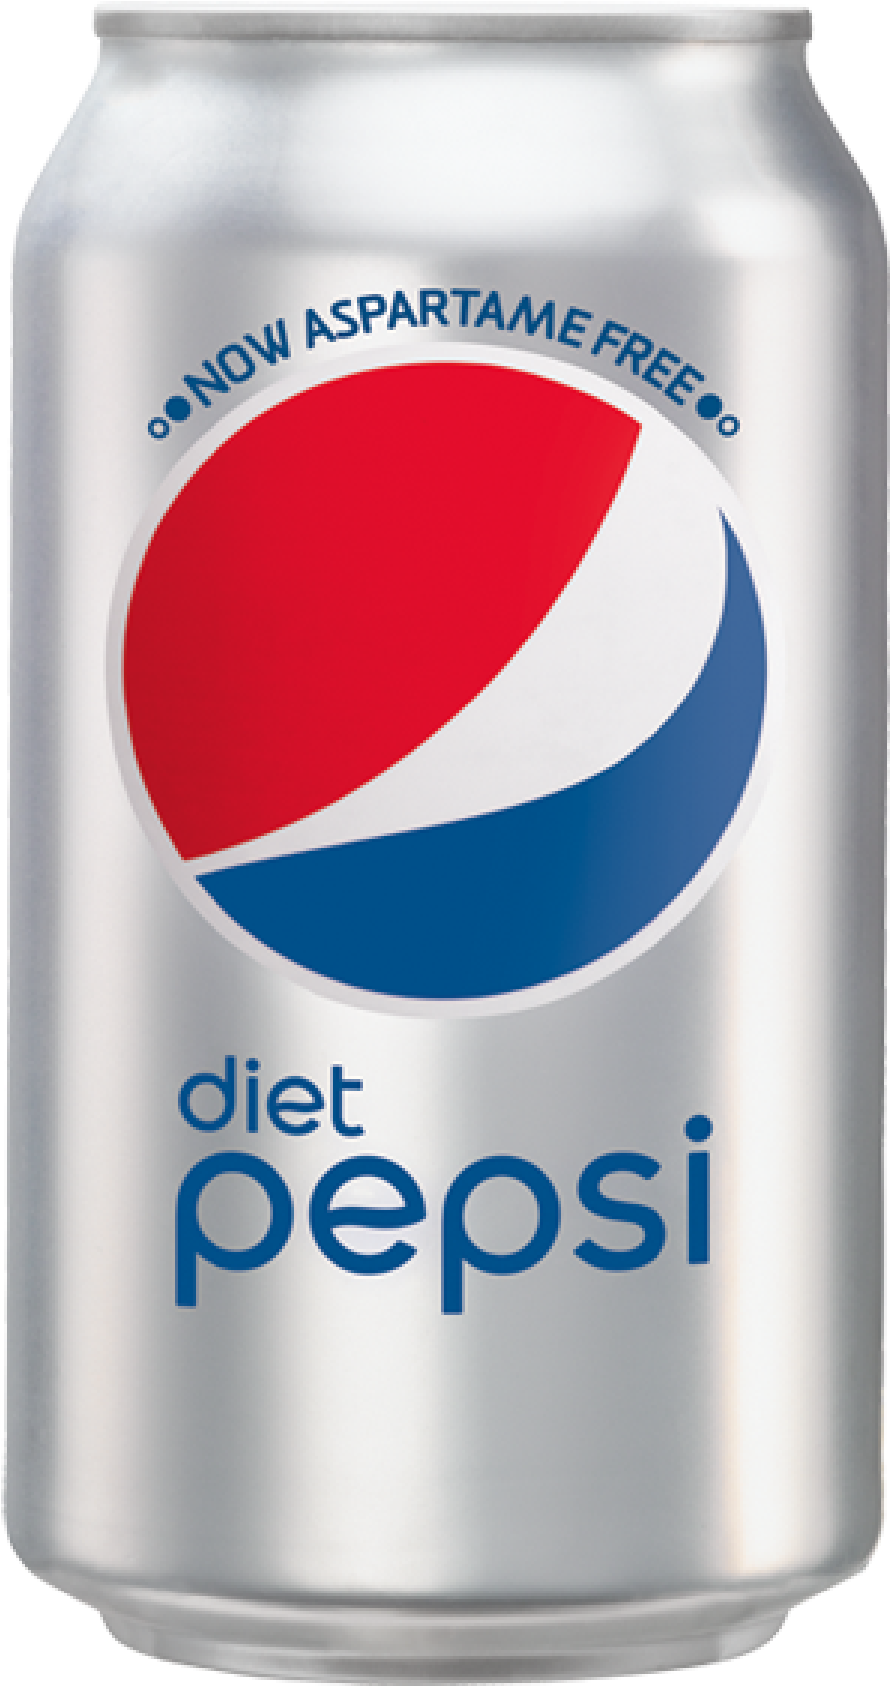 Diet Pepsi $1 - Diet Pepsi Cans (2083x2083)